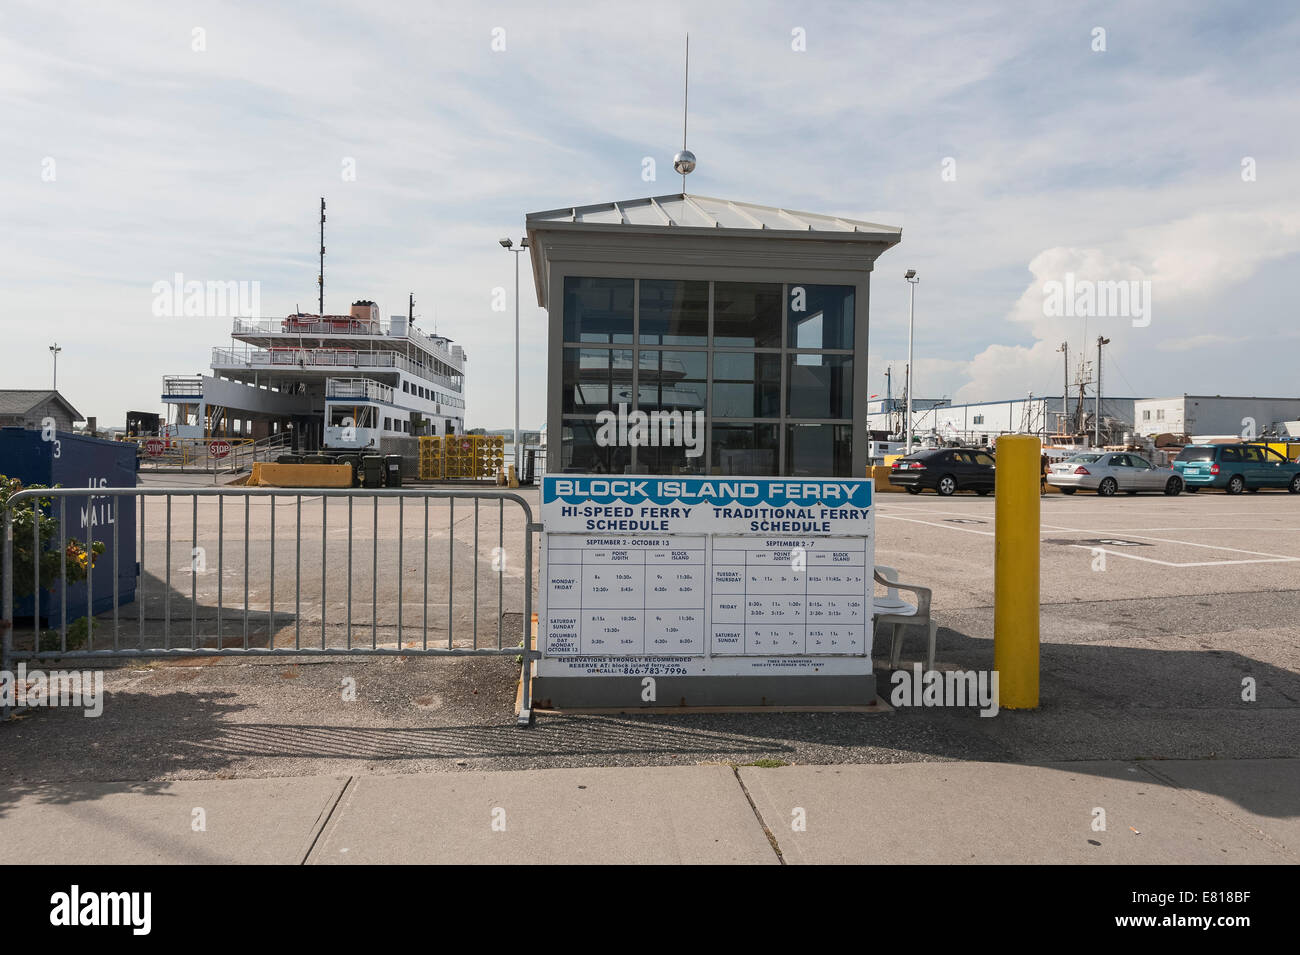 Block Island Ferry Narragansett Rhode Island orari e prenotazioni auto solo Parcheggio Foto Stock